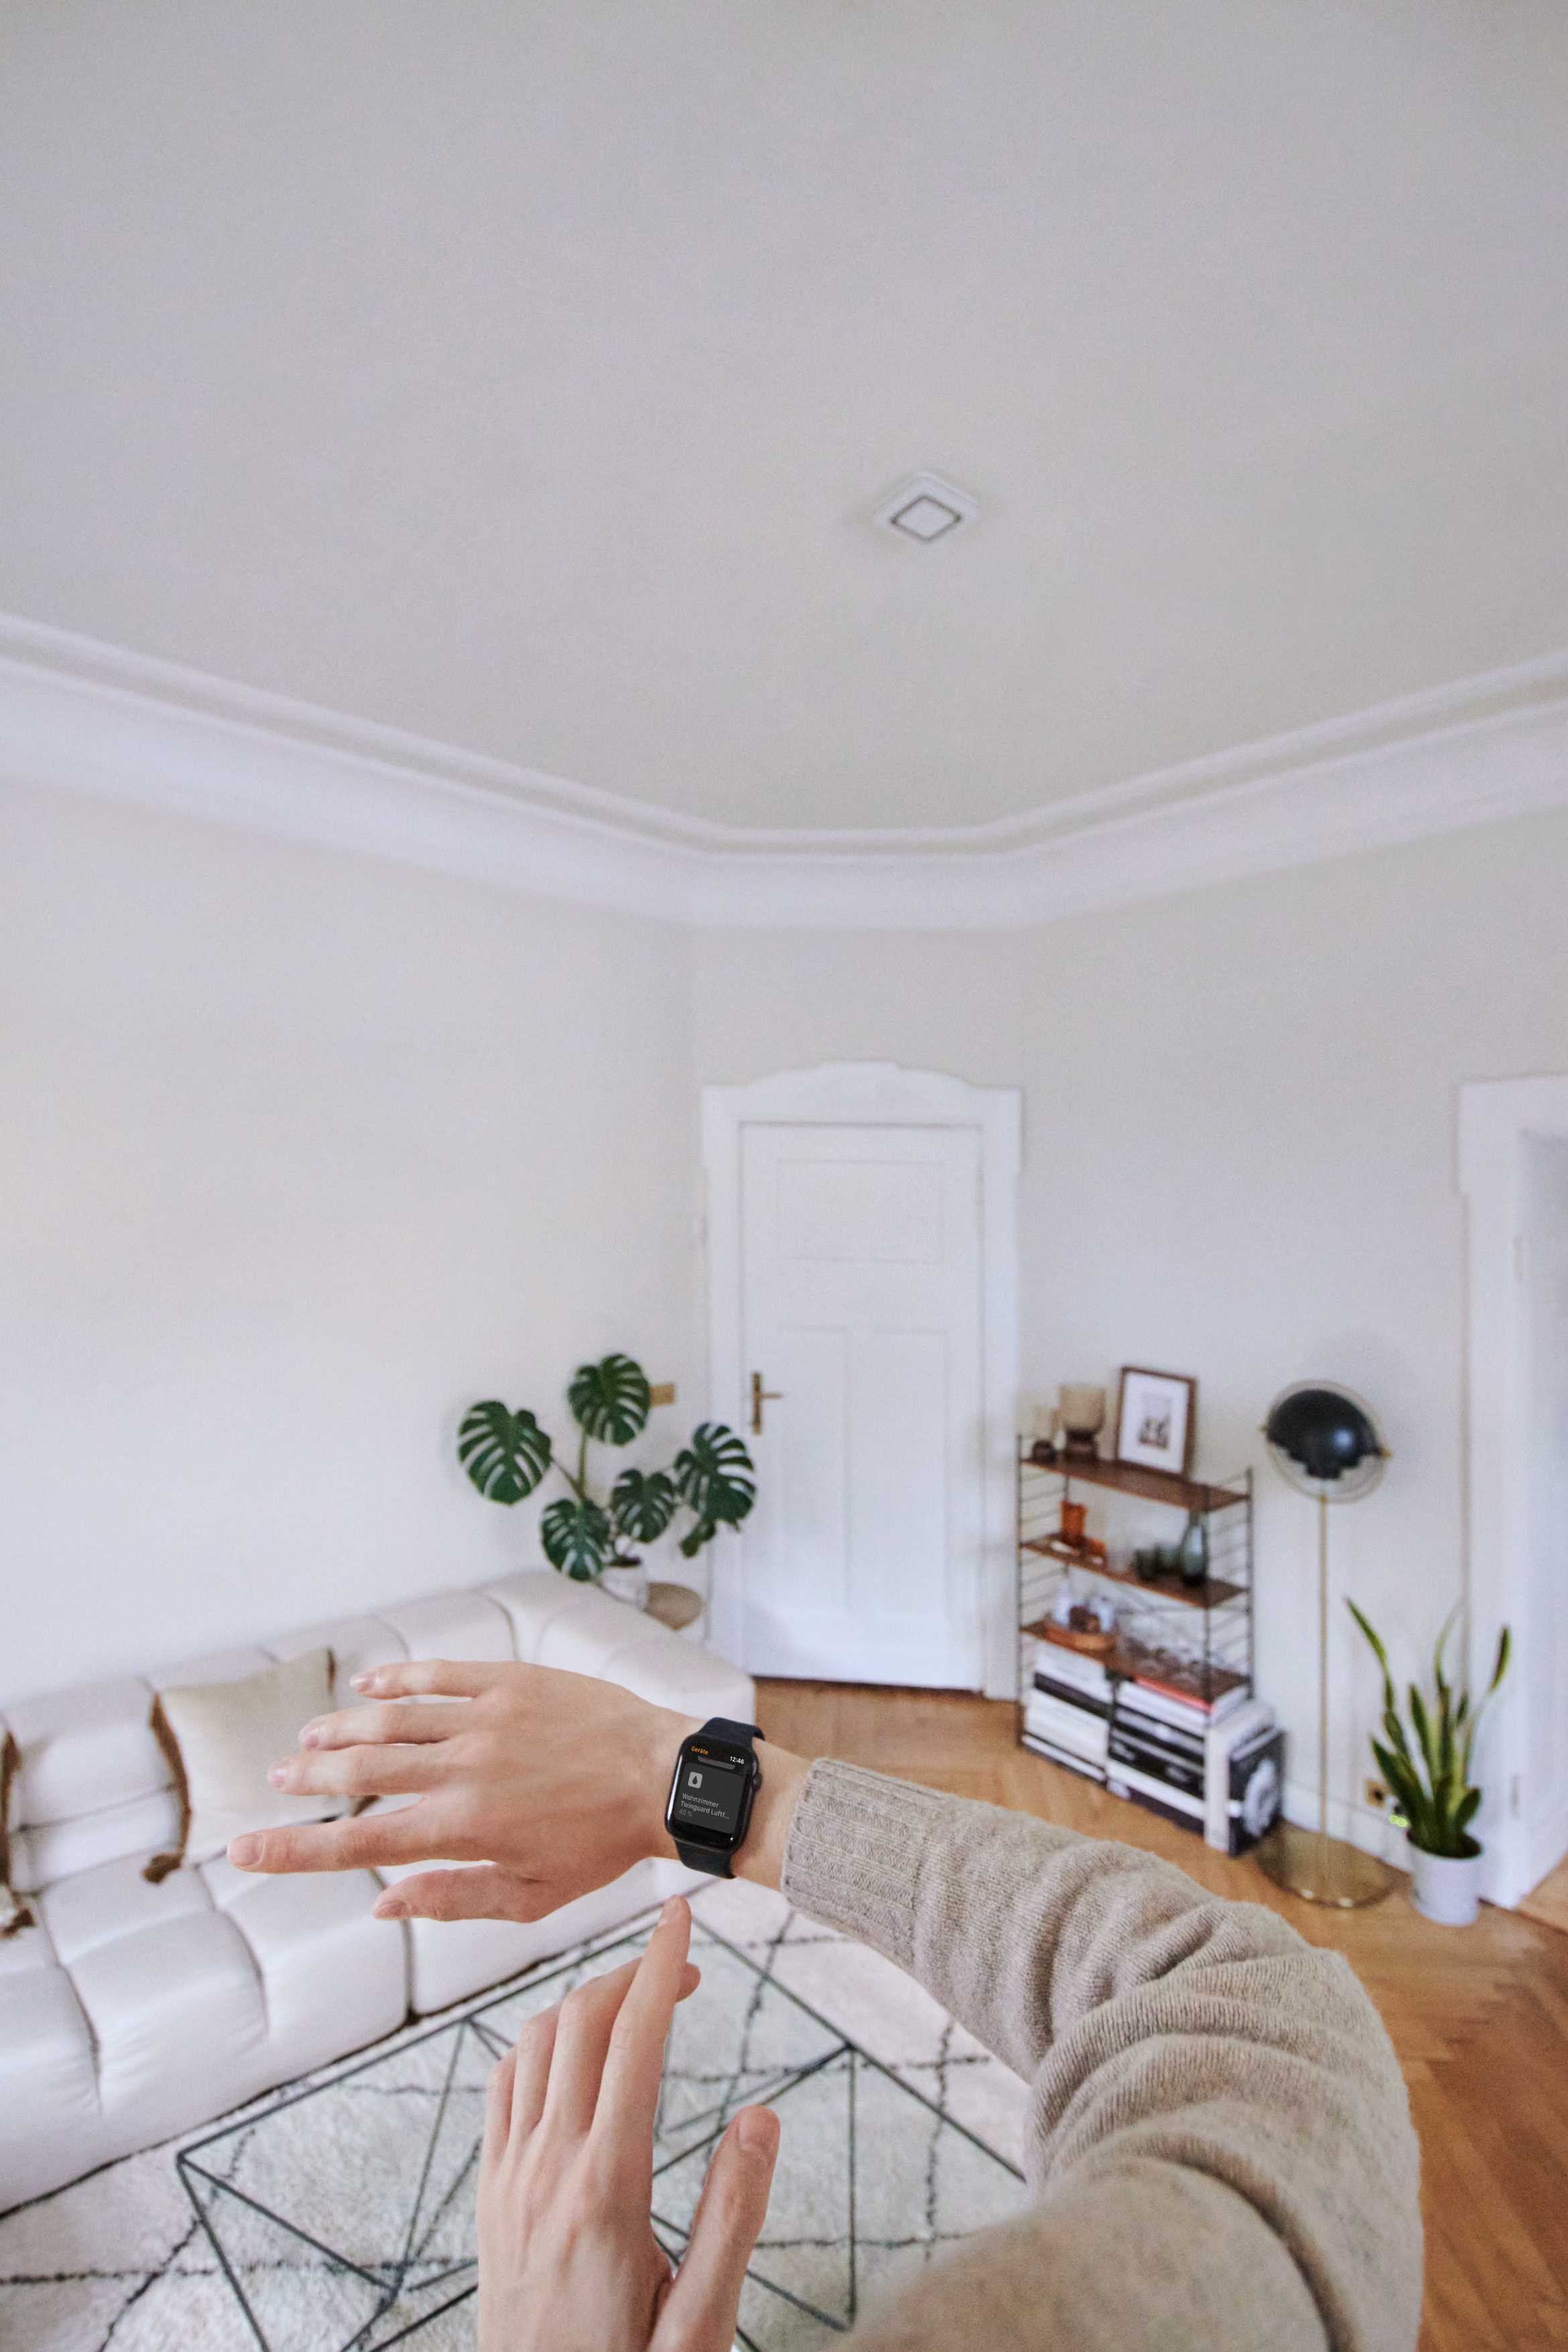 Bosch Smart Home steuerbar über Apple Watch